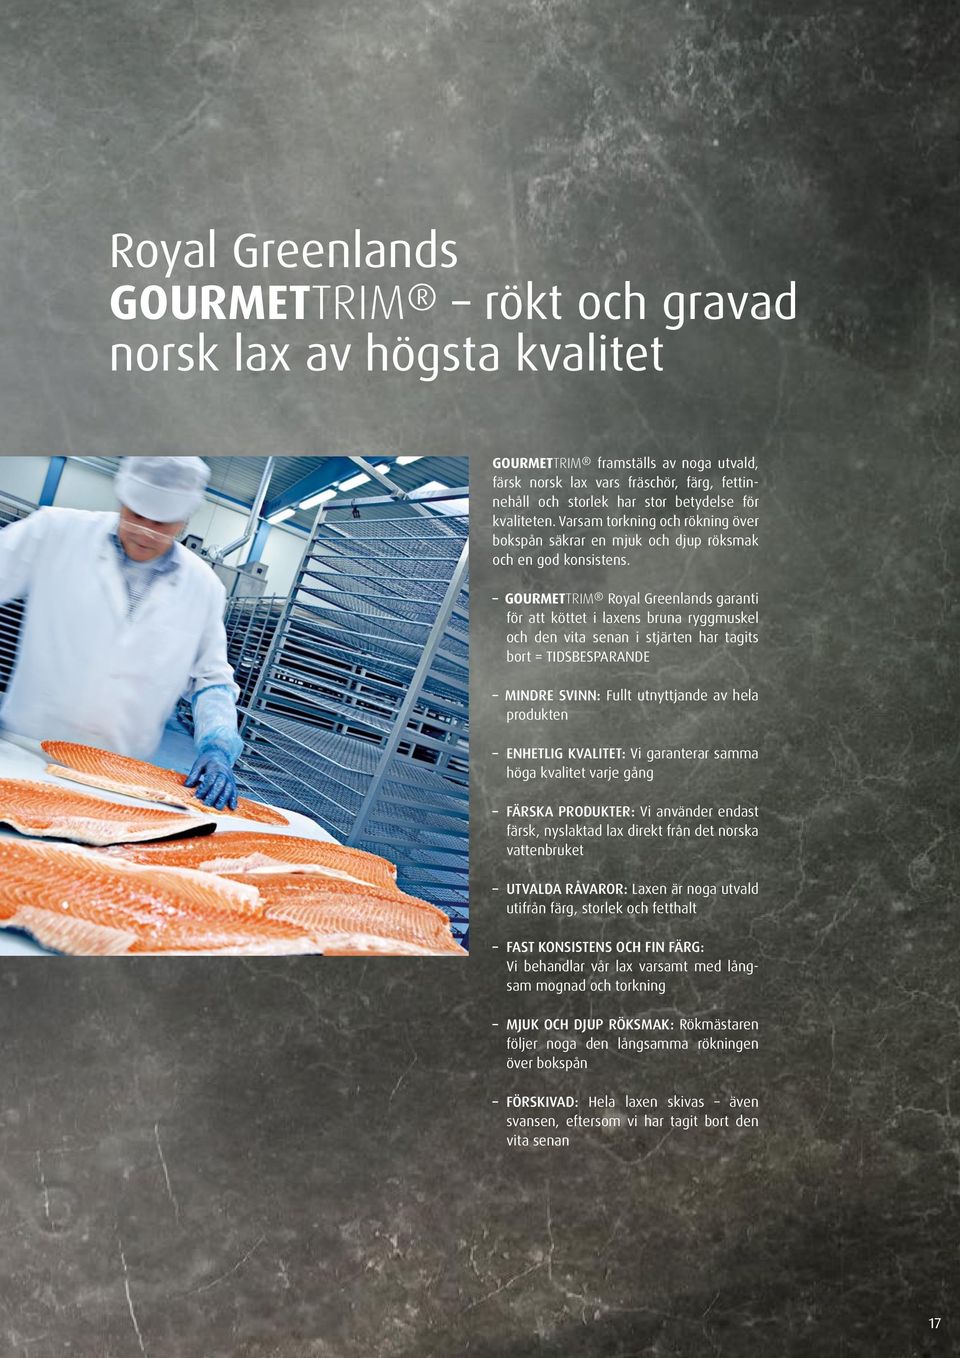 GOURMETTRIM Royal Greenlands garanti för att köttet i laxens bruna ryggmuskel och den vita senan i stjärten har tagits bort = TIDSBESPARANDE MINDRE SVINN: Fullt utnyttjande av hela produkten ENHETLIG